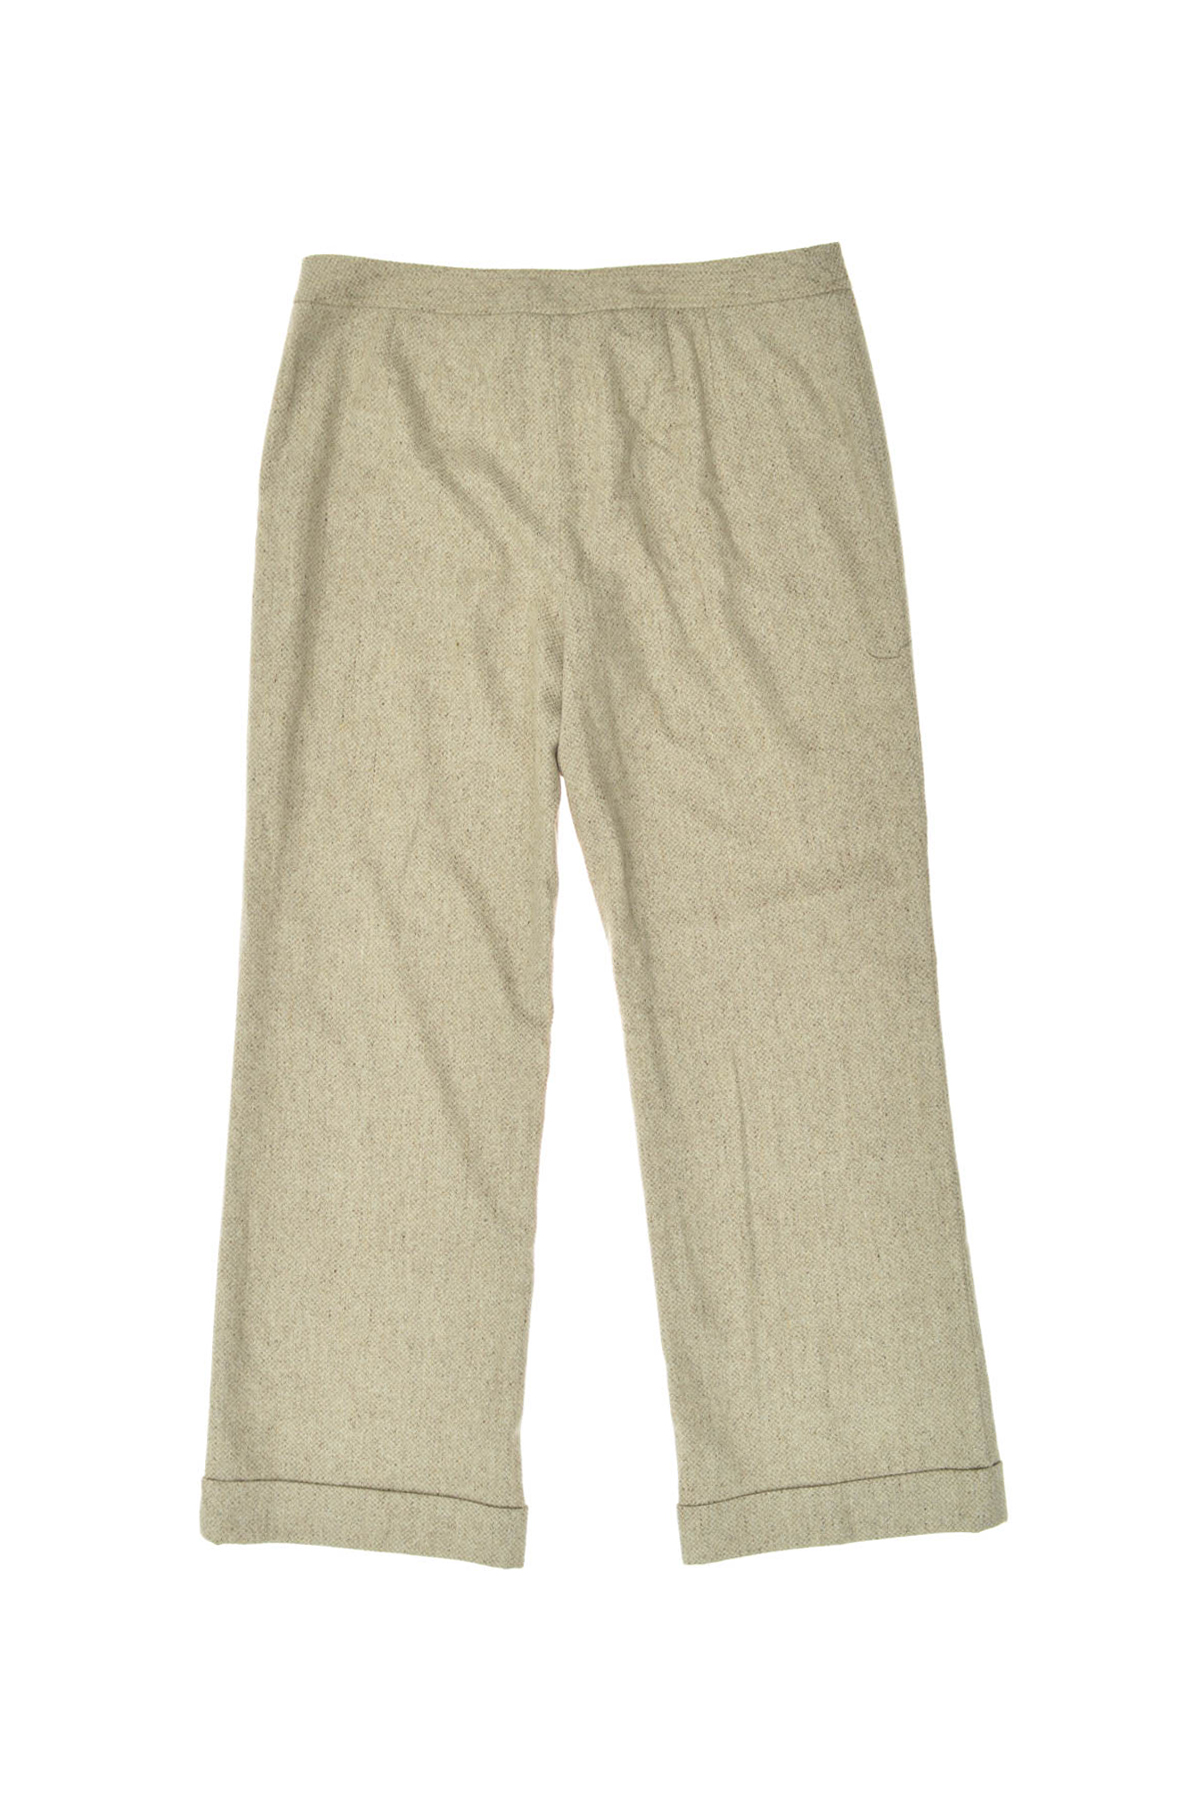 Women's trousers - ANN TAYLOR LOFT - 1